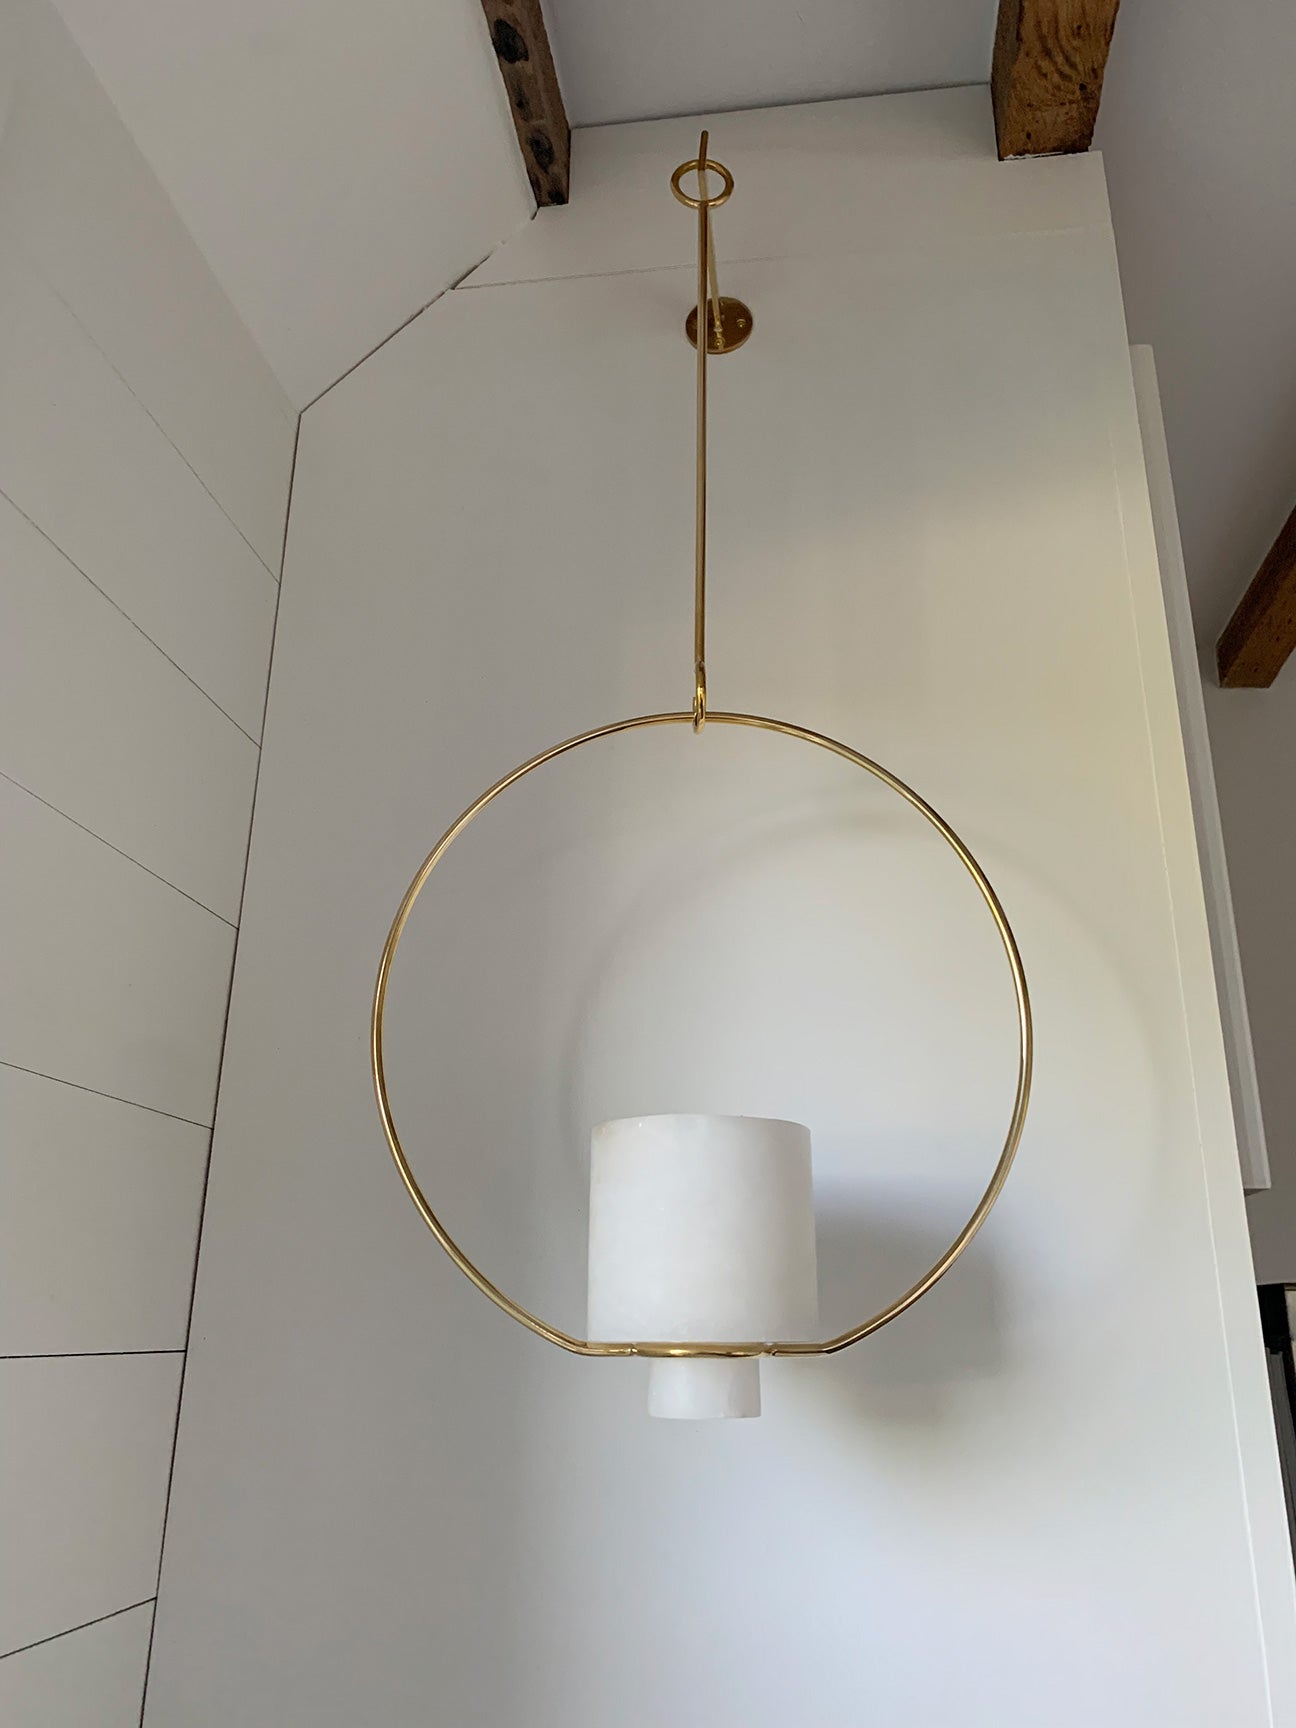 Hanging Planter/Lantern with Hook Medium - Alabaster